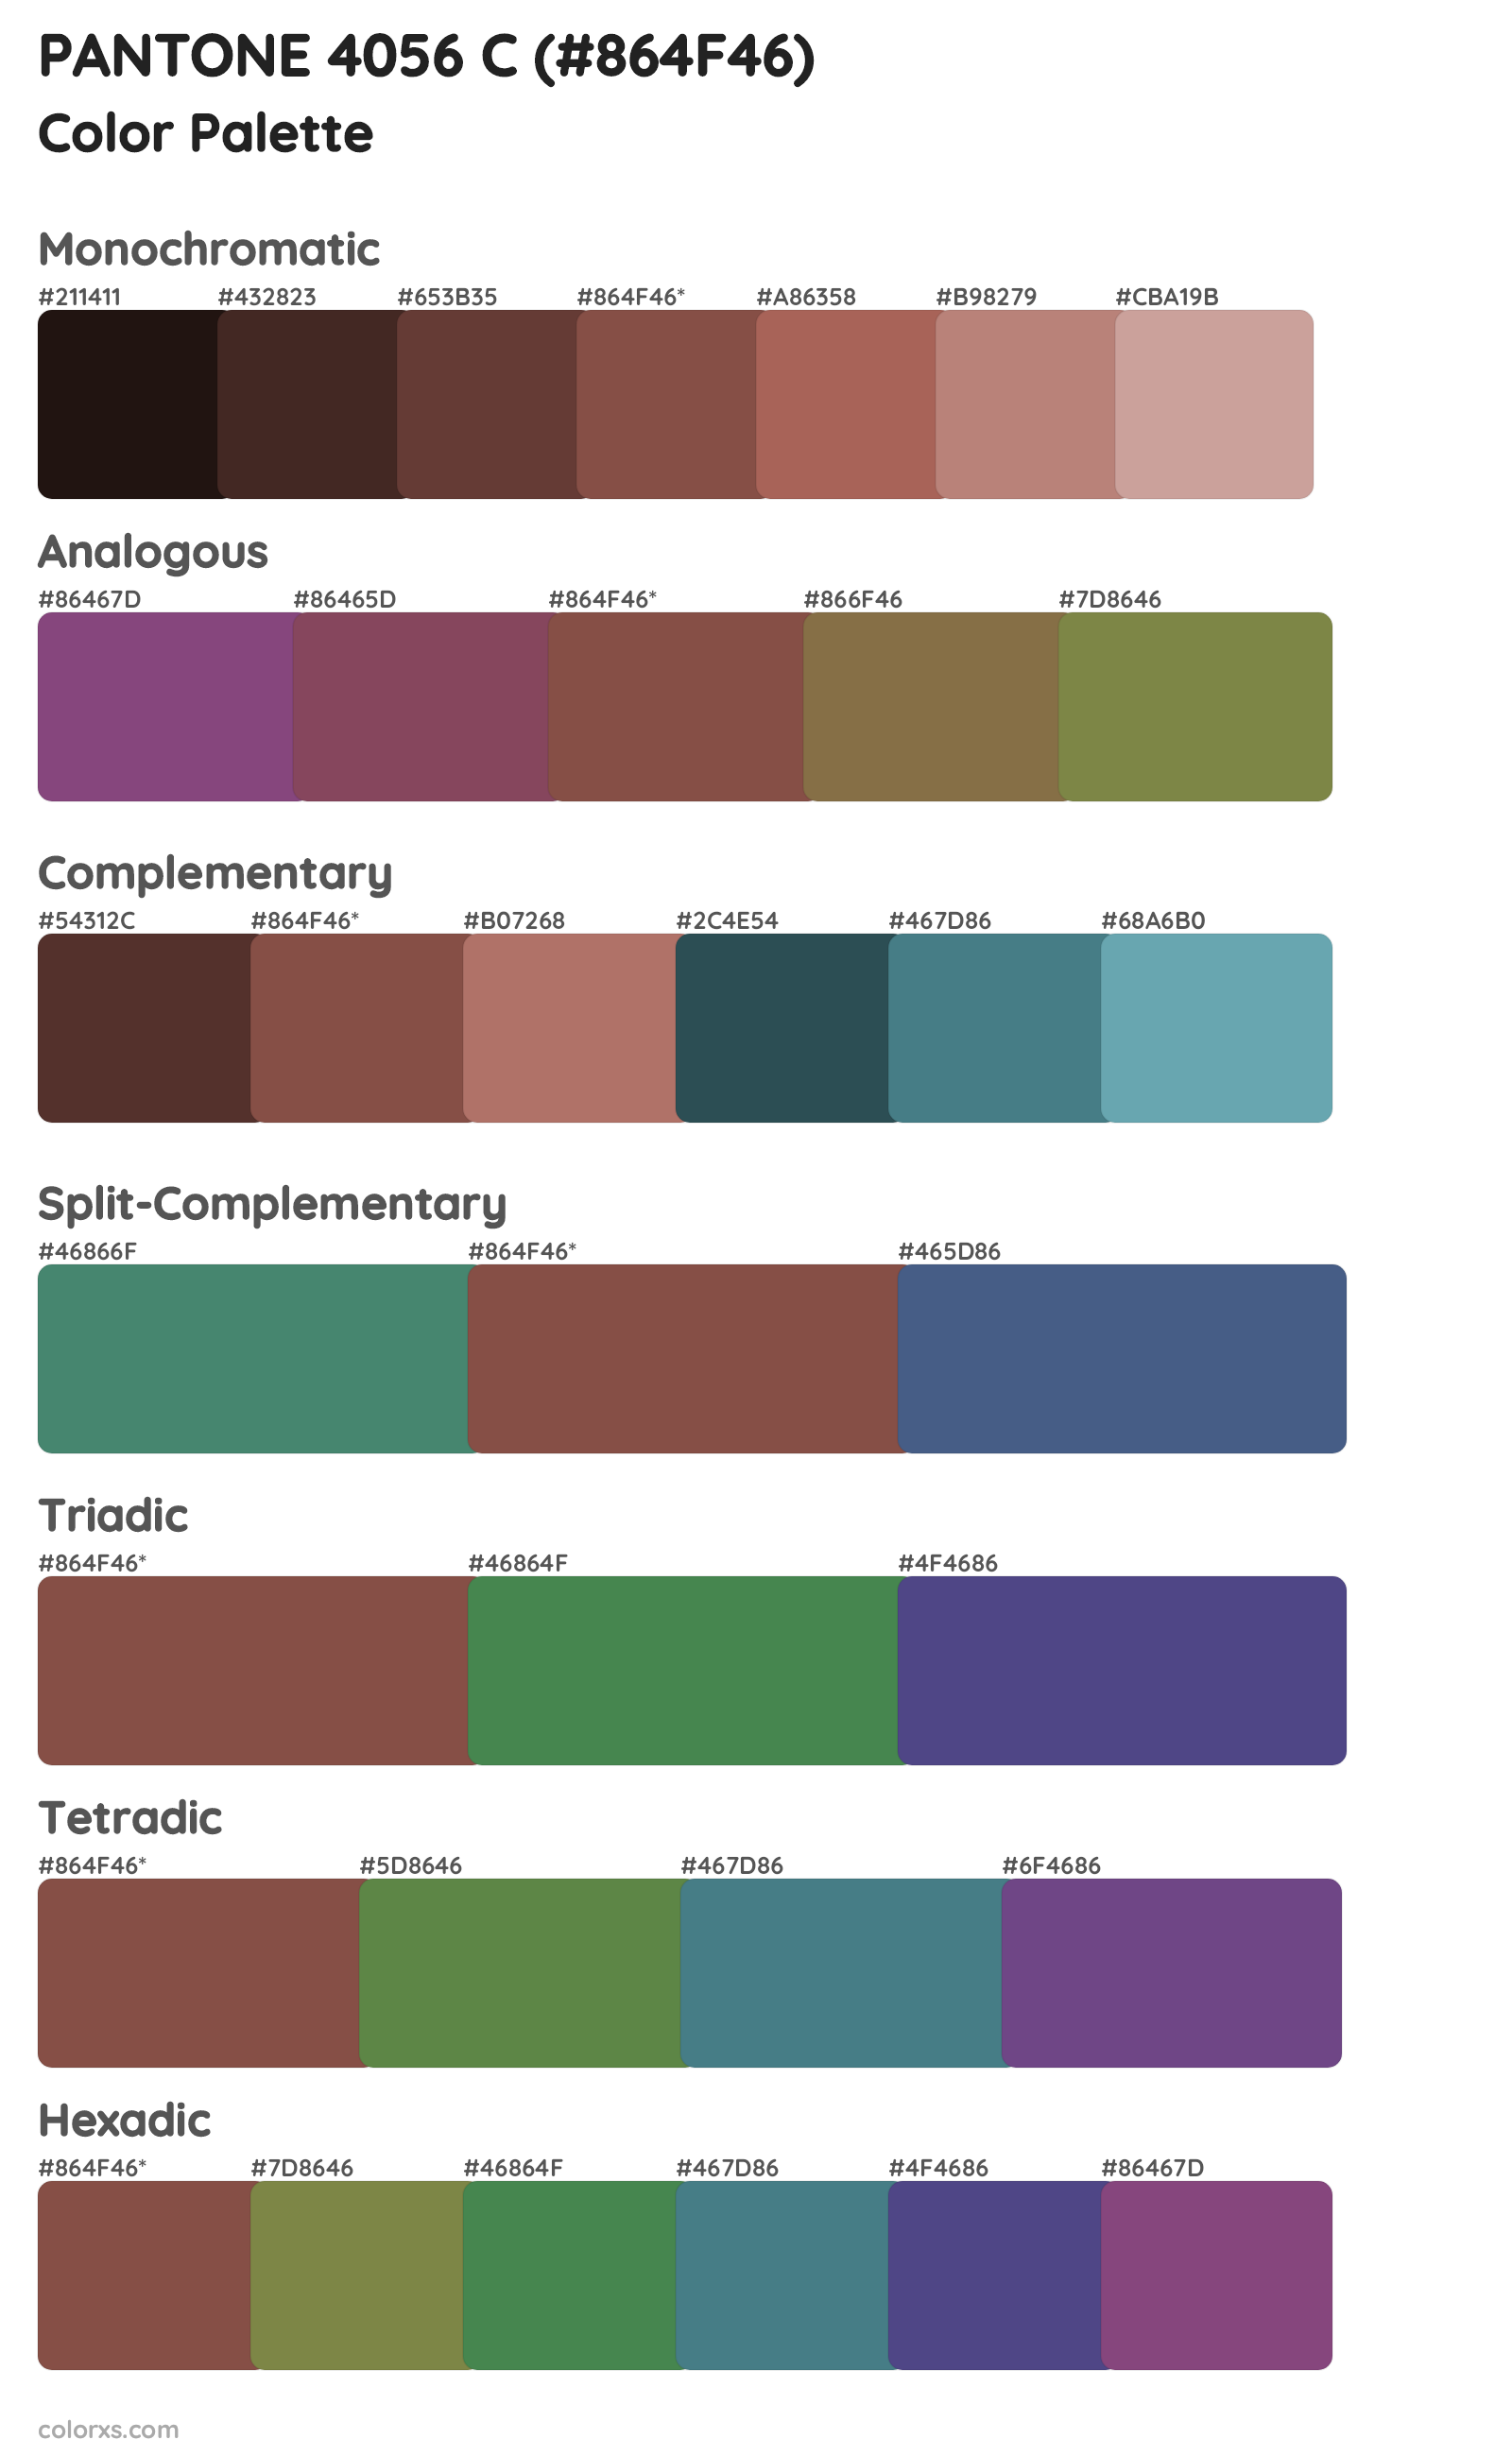 PANTONE 4056 C Color Scheme Palettes